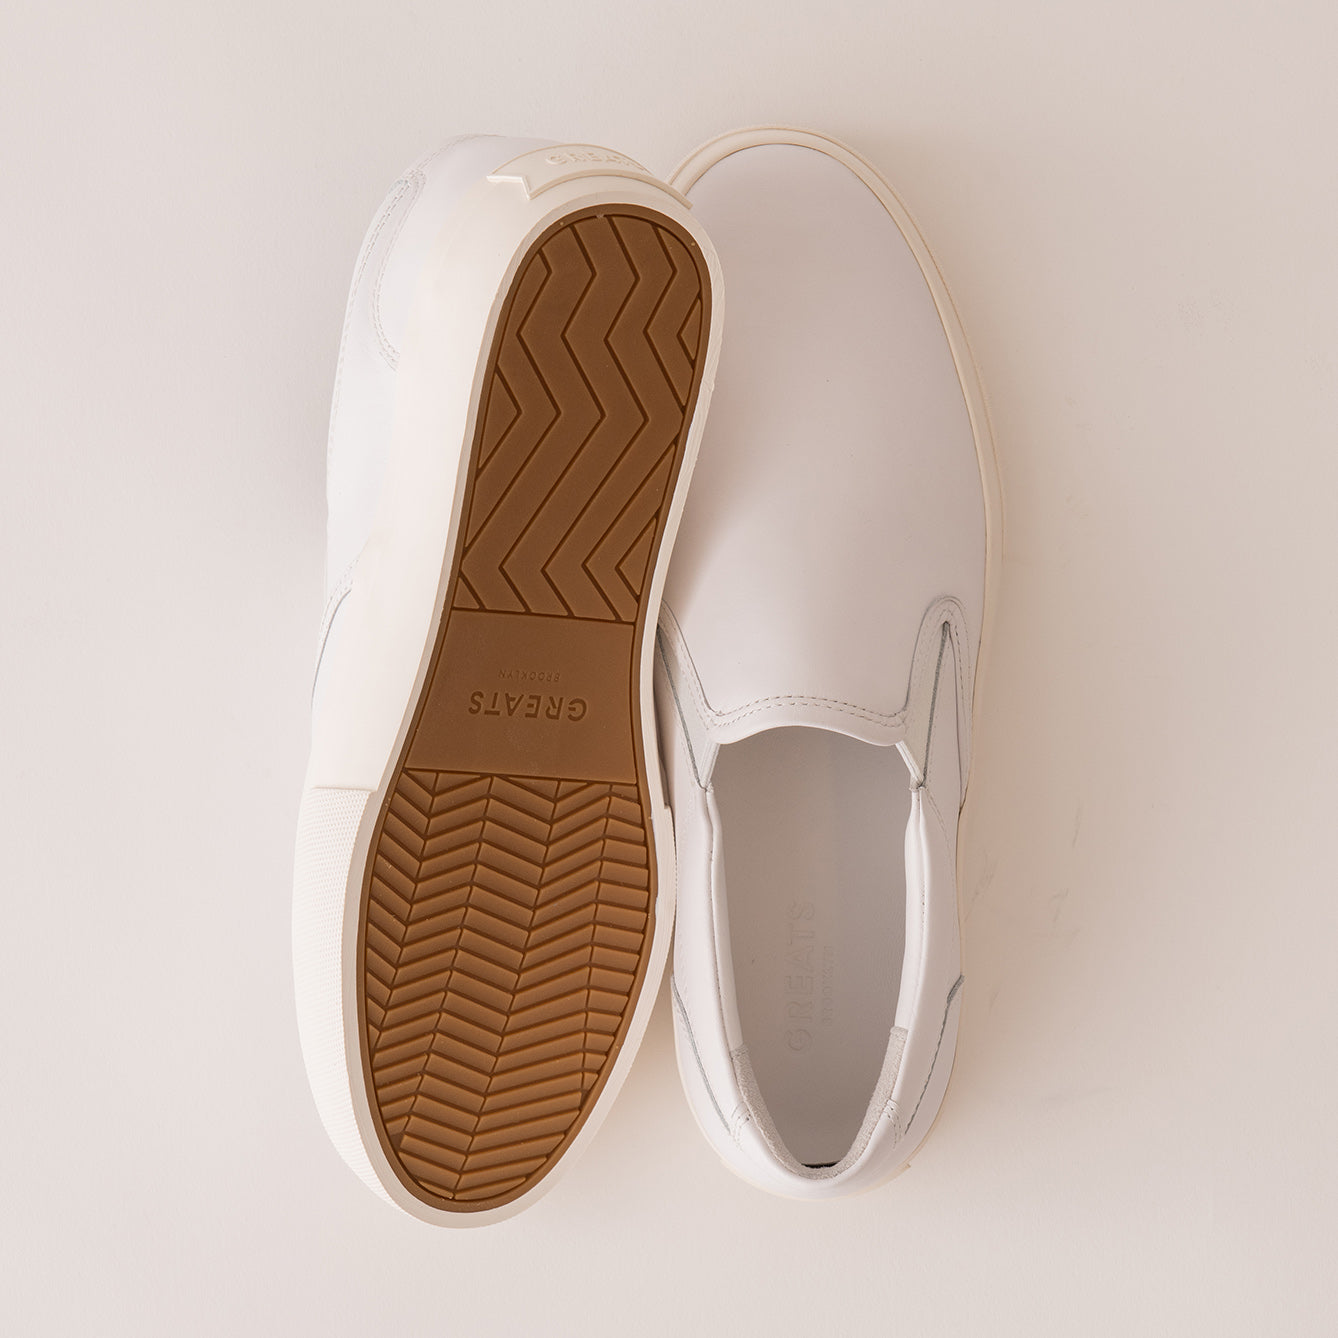 GREATS - The Royale Knit - White Gum - Men's Shoe